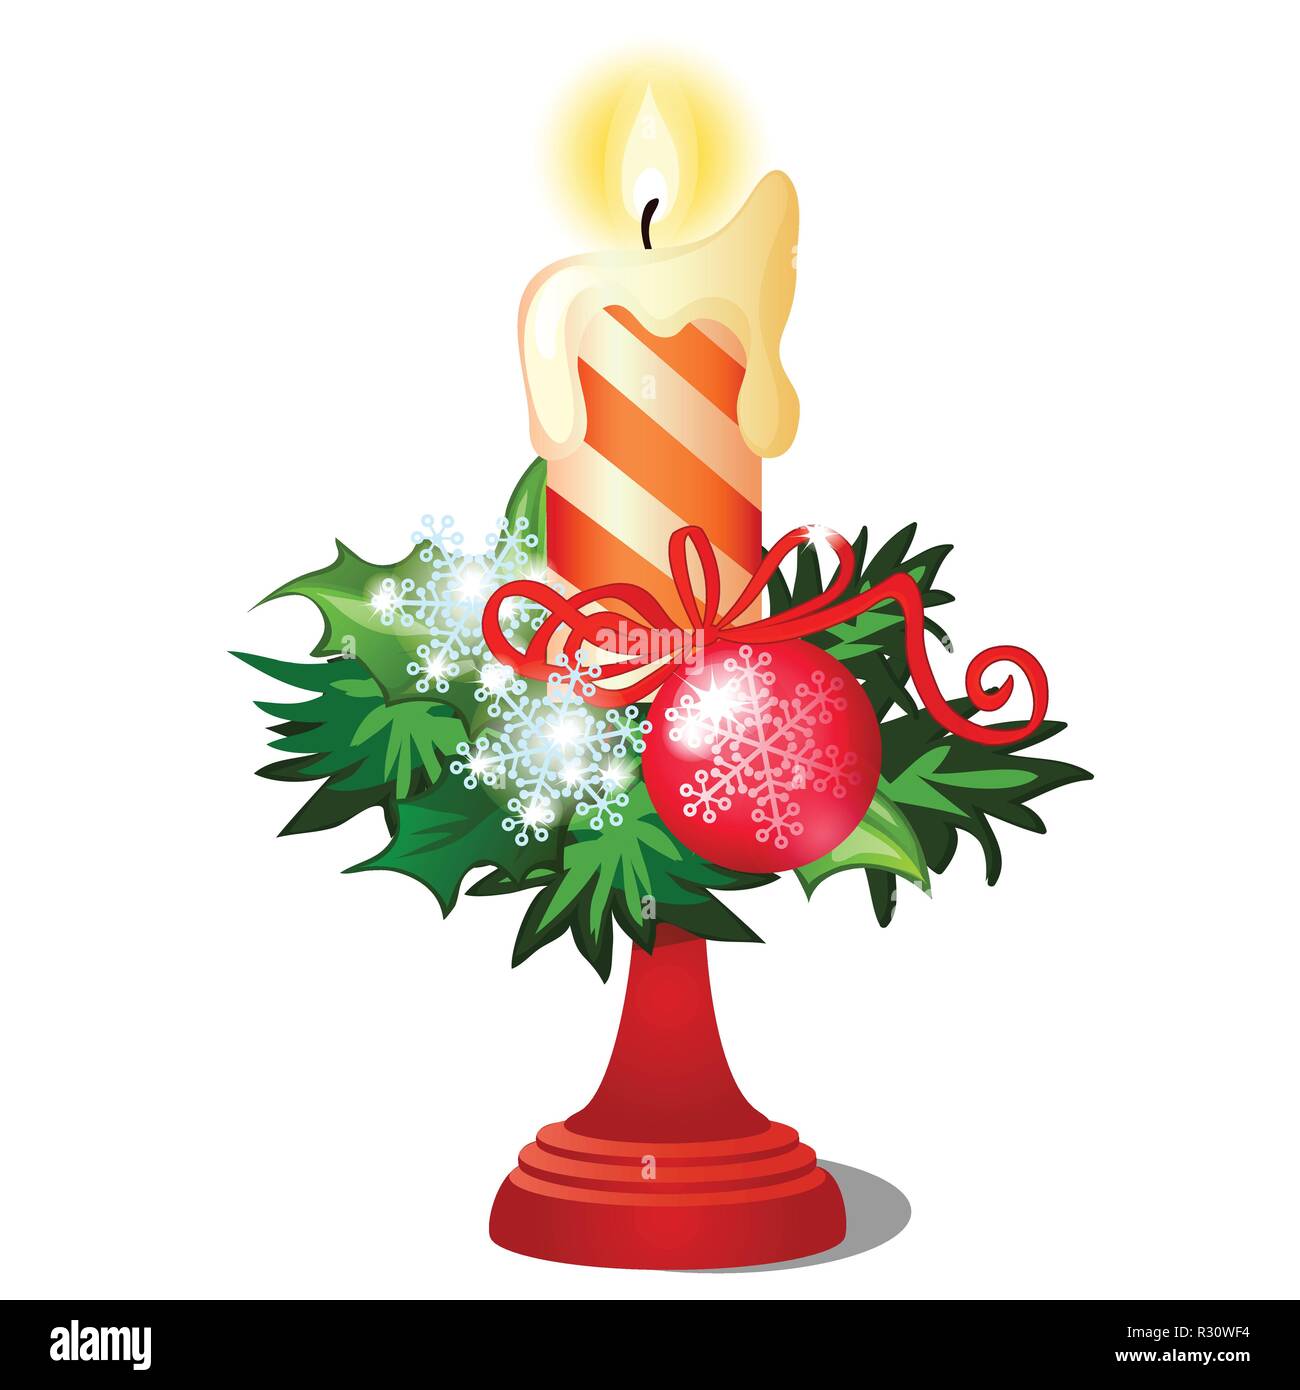 Schizzo di natale con candela che brucia in portacandele con decorazioni di festa e baubles isolati su sfondo bianco. Vector cartoon close-up illustrazione. Illustrazione Vettoriale